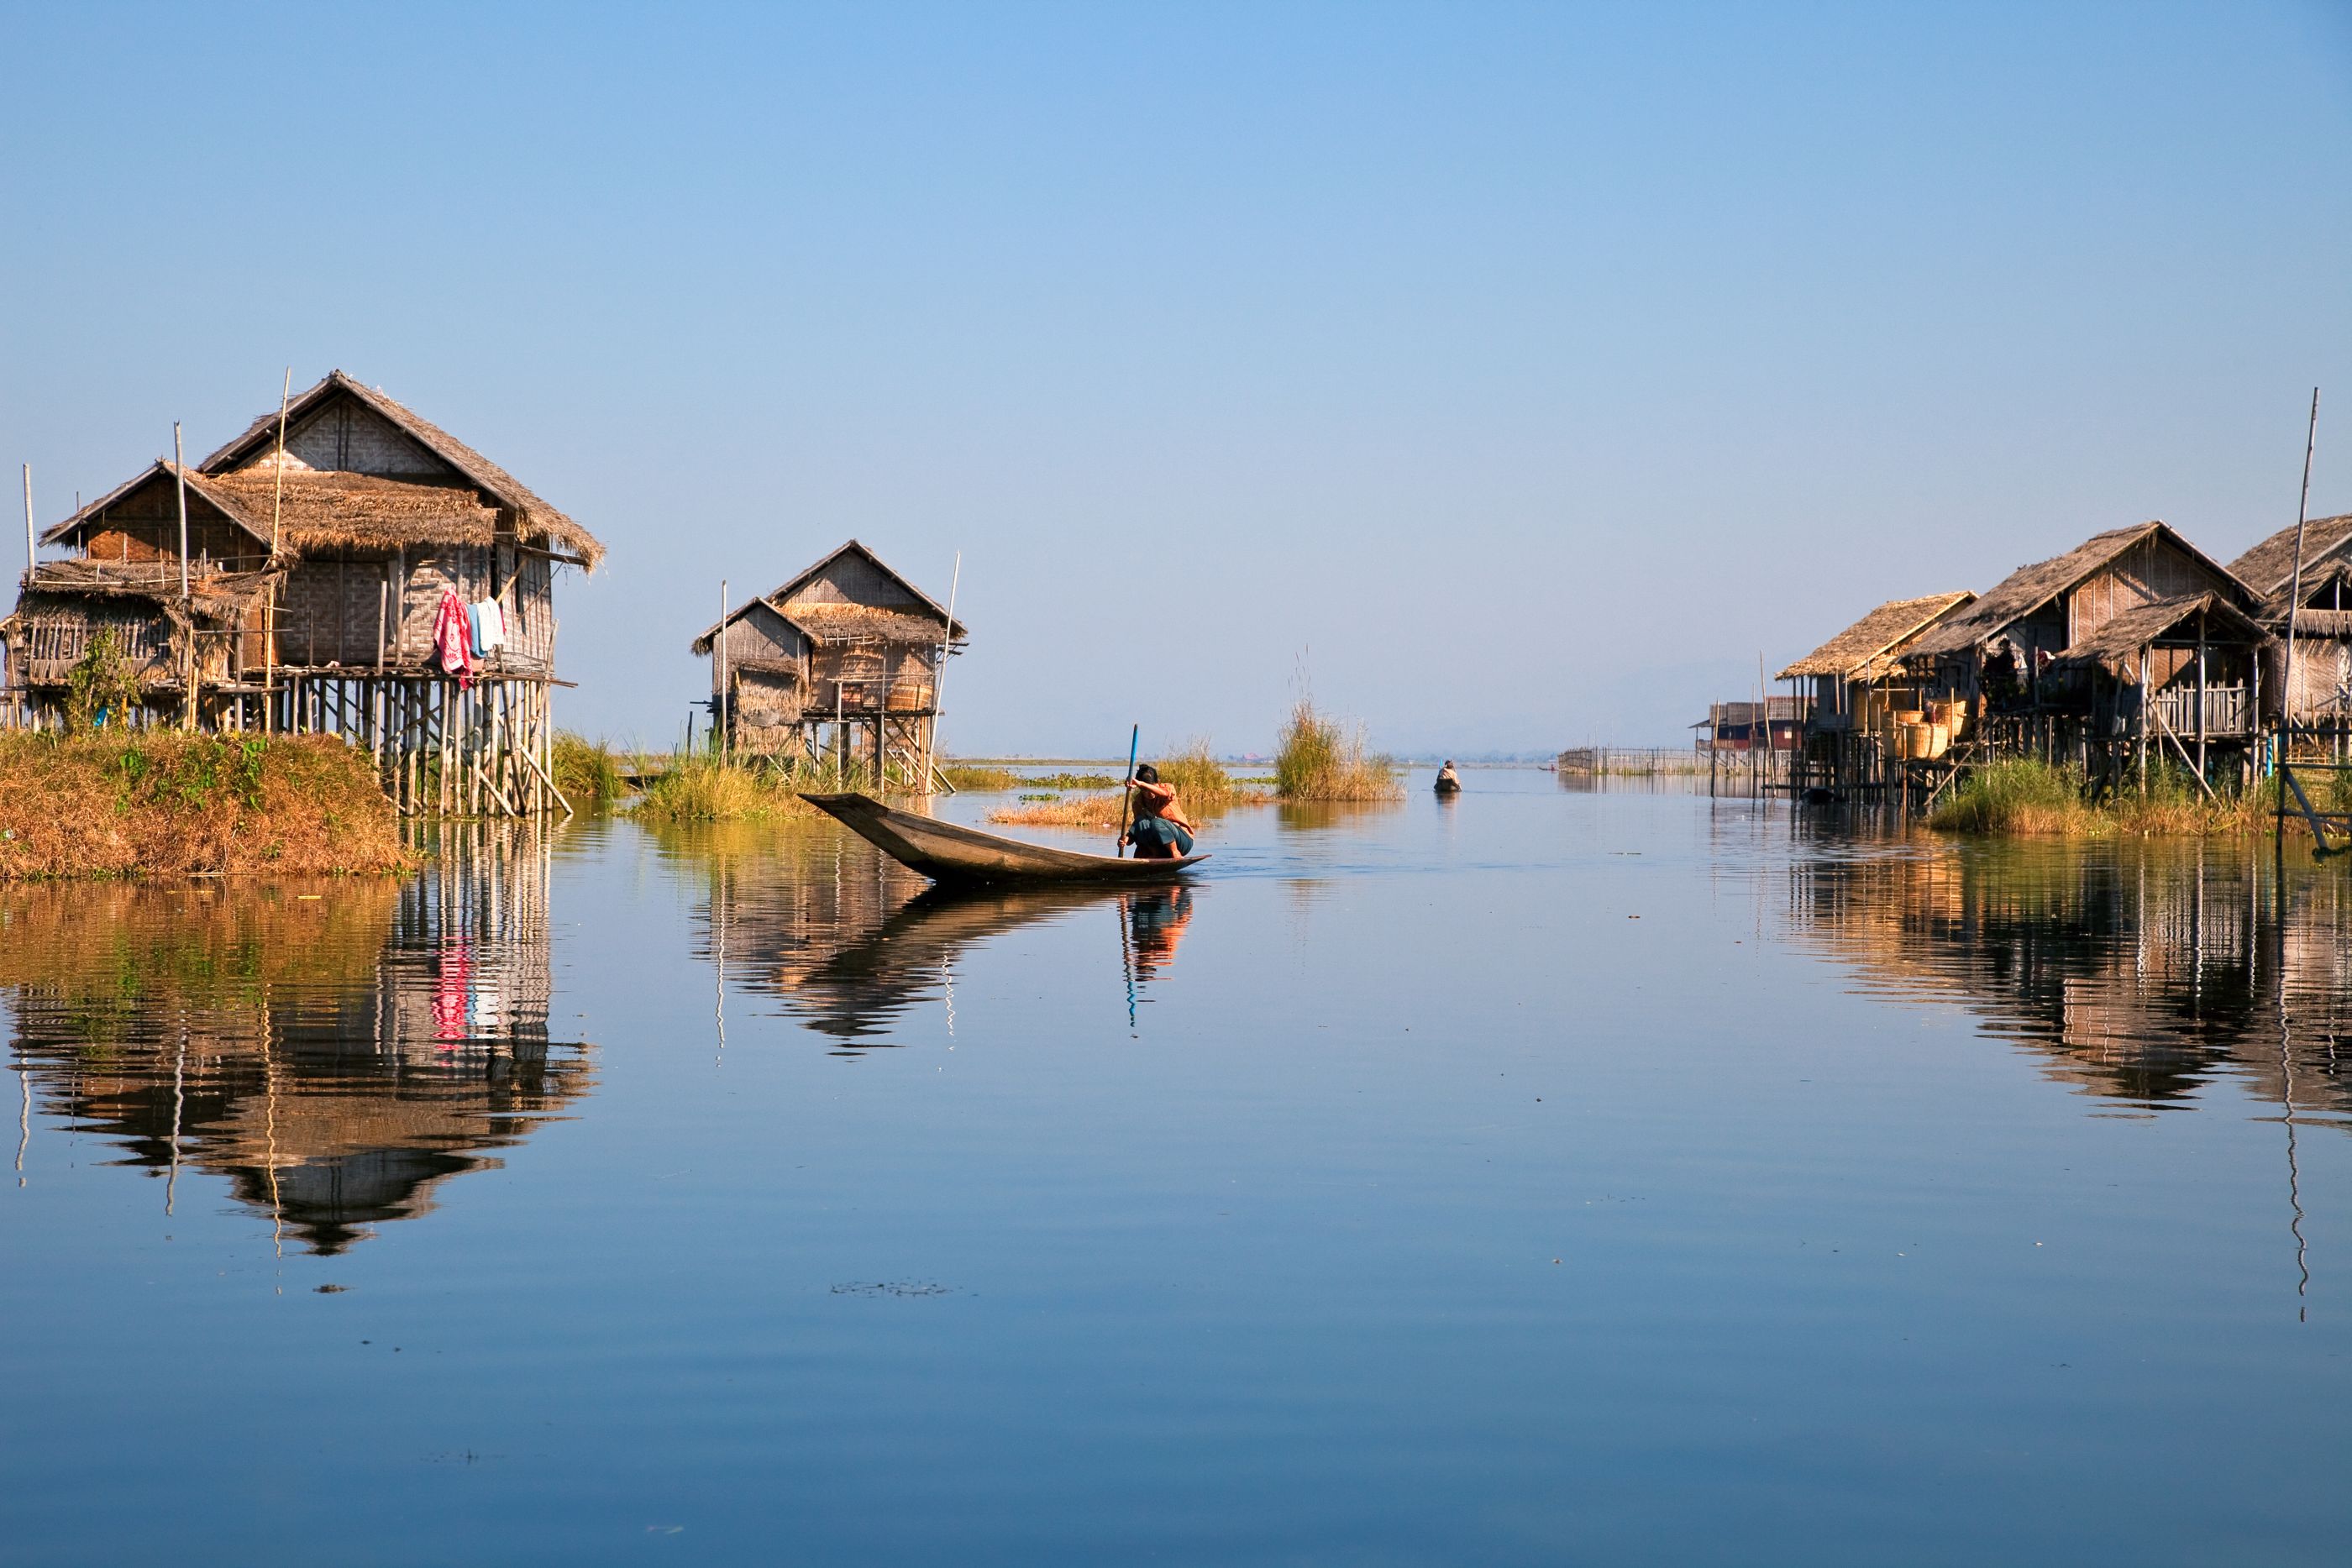 Floating village on Inle Lake in Myanmar